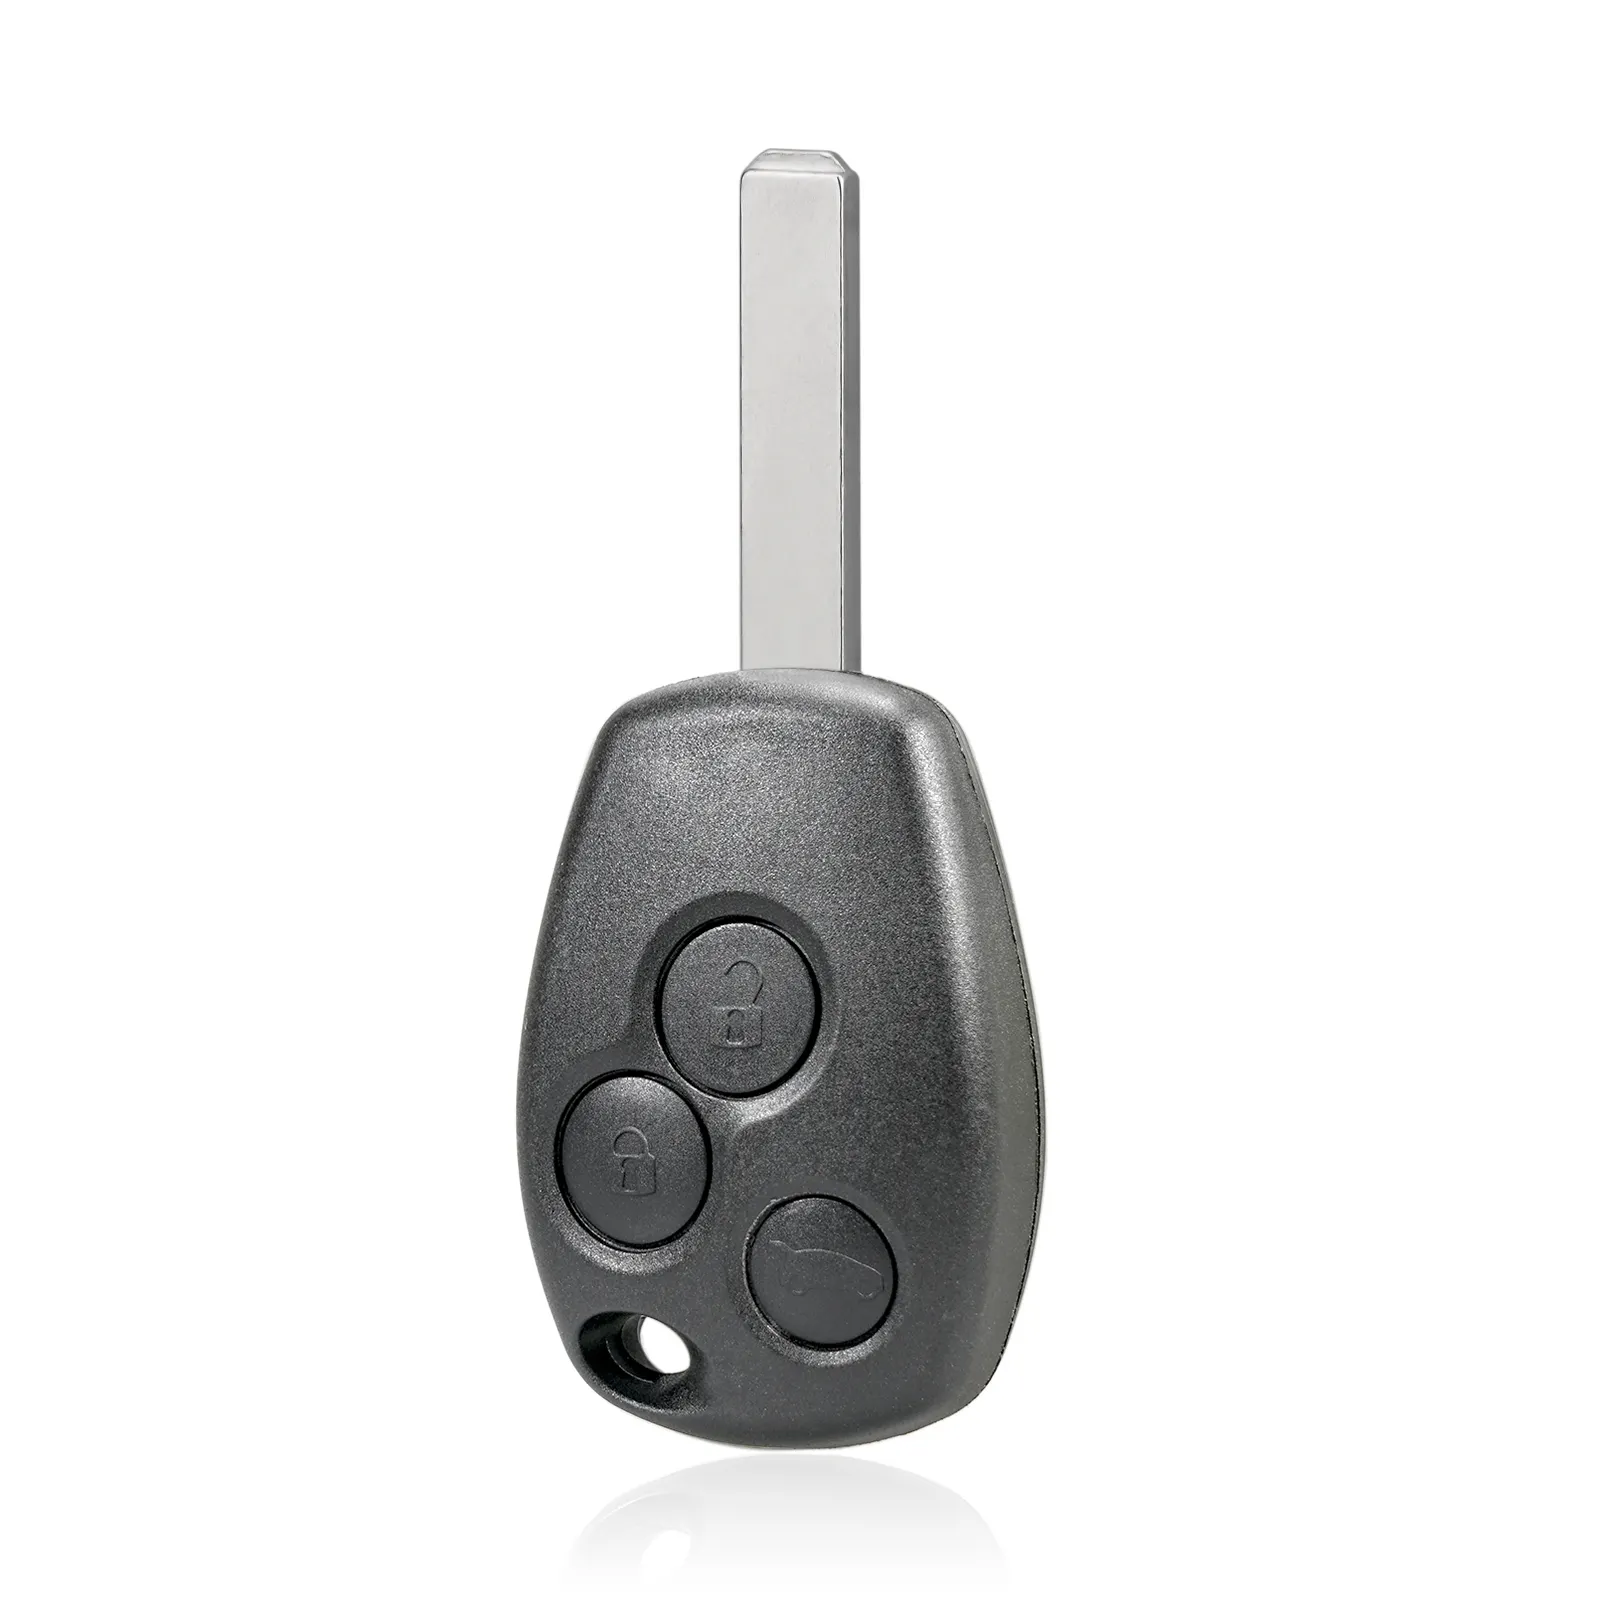 Casing penutup FOB kunci mobil 3 tombol Remote Control pengganti tanpa kunci untuk Renault Clio Dacia Logan Sandero